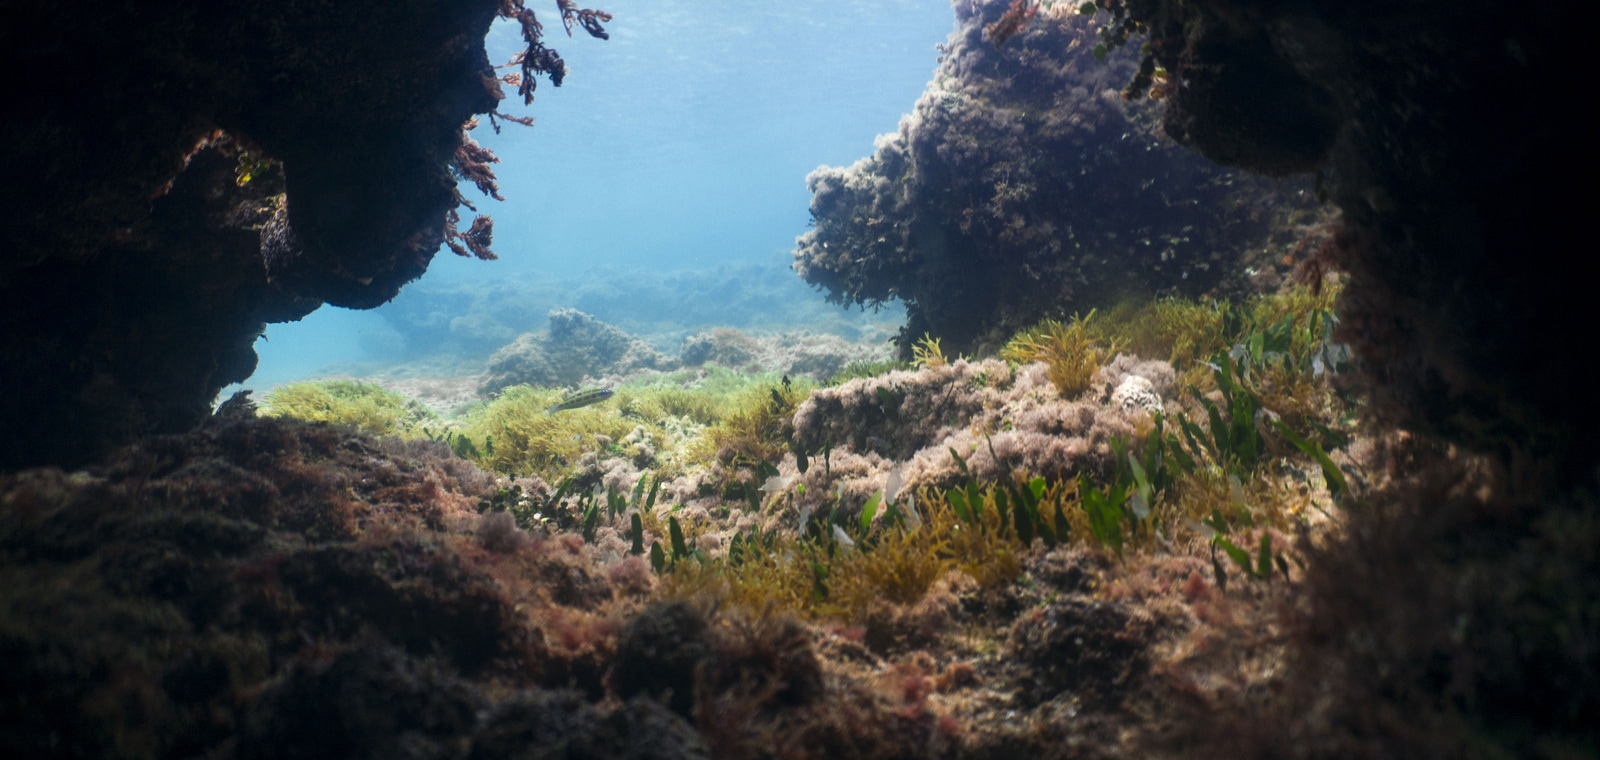 Fondo marino con vegetación